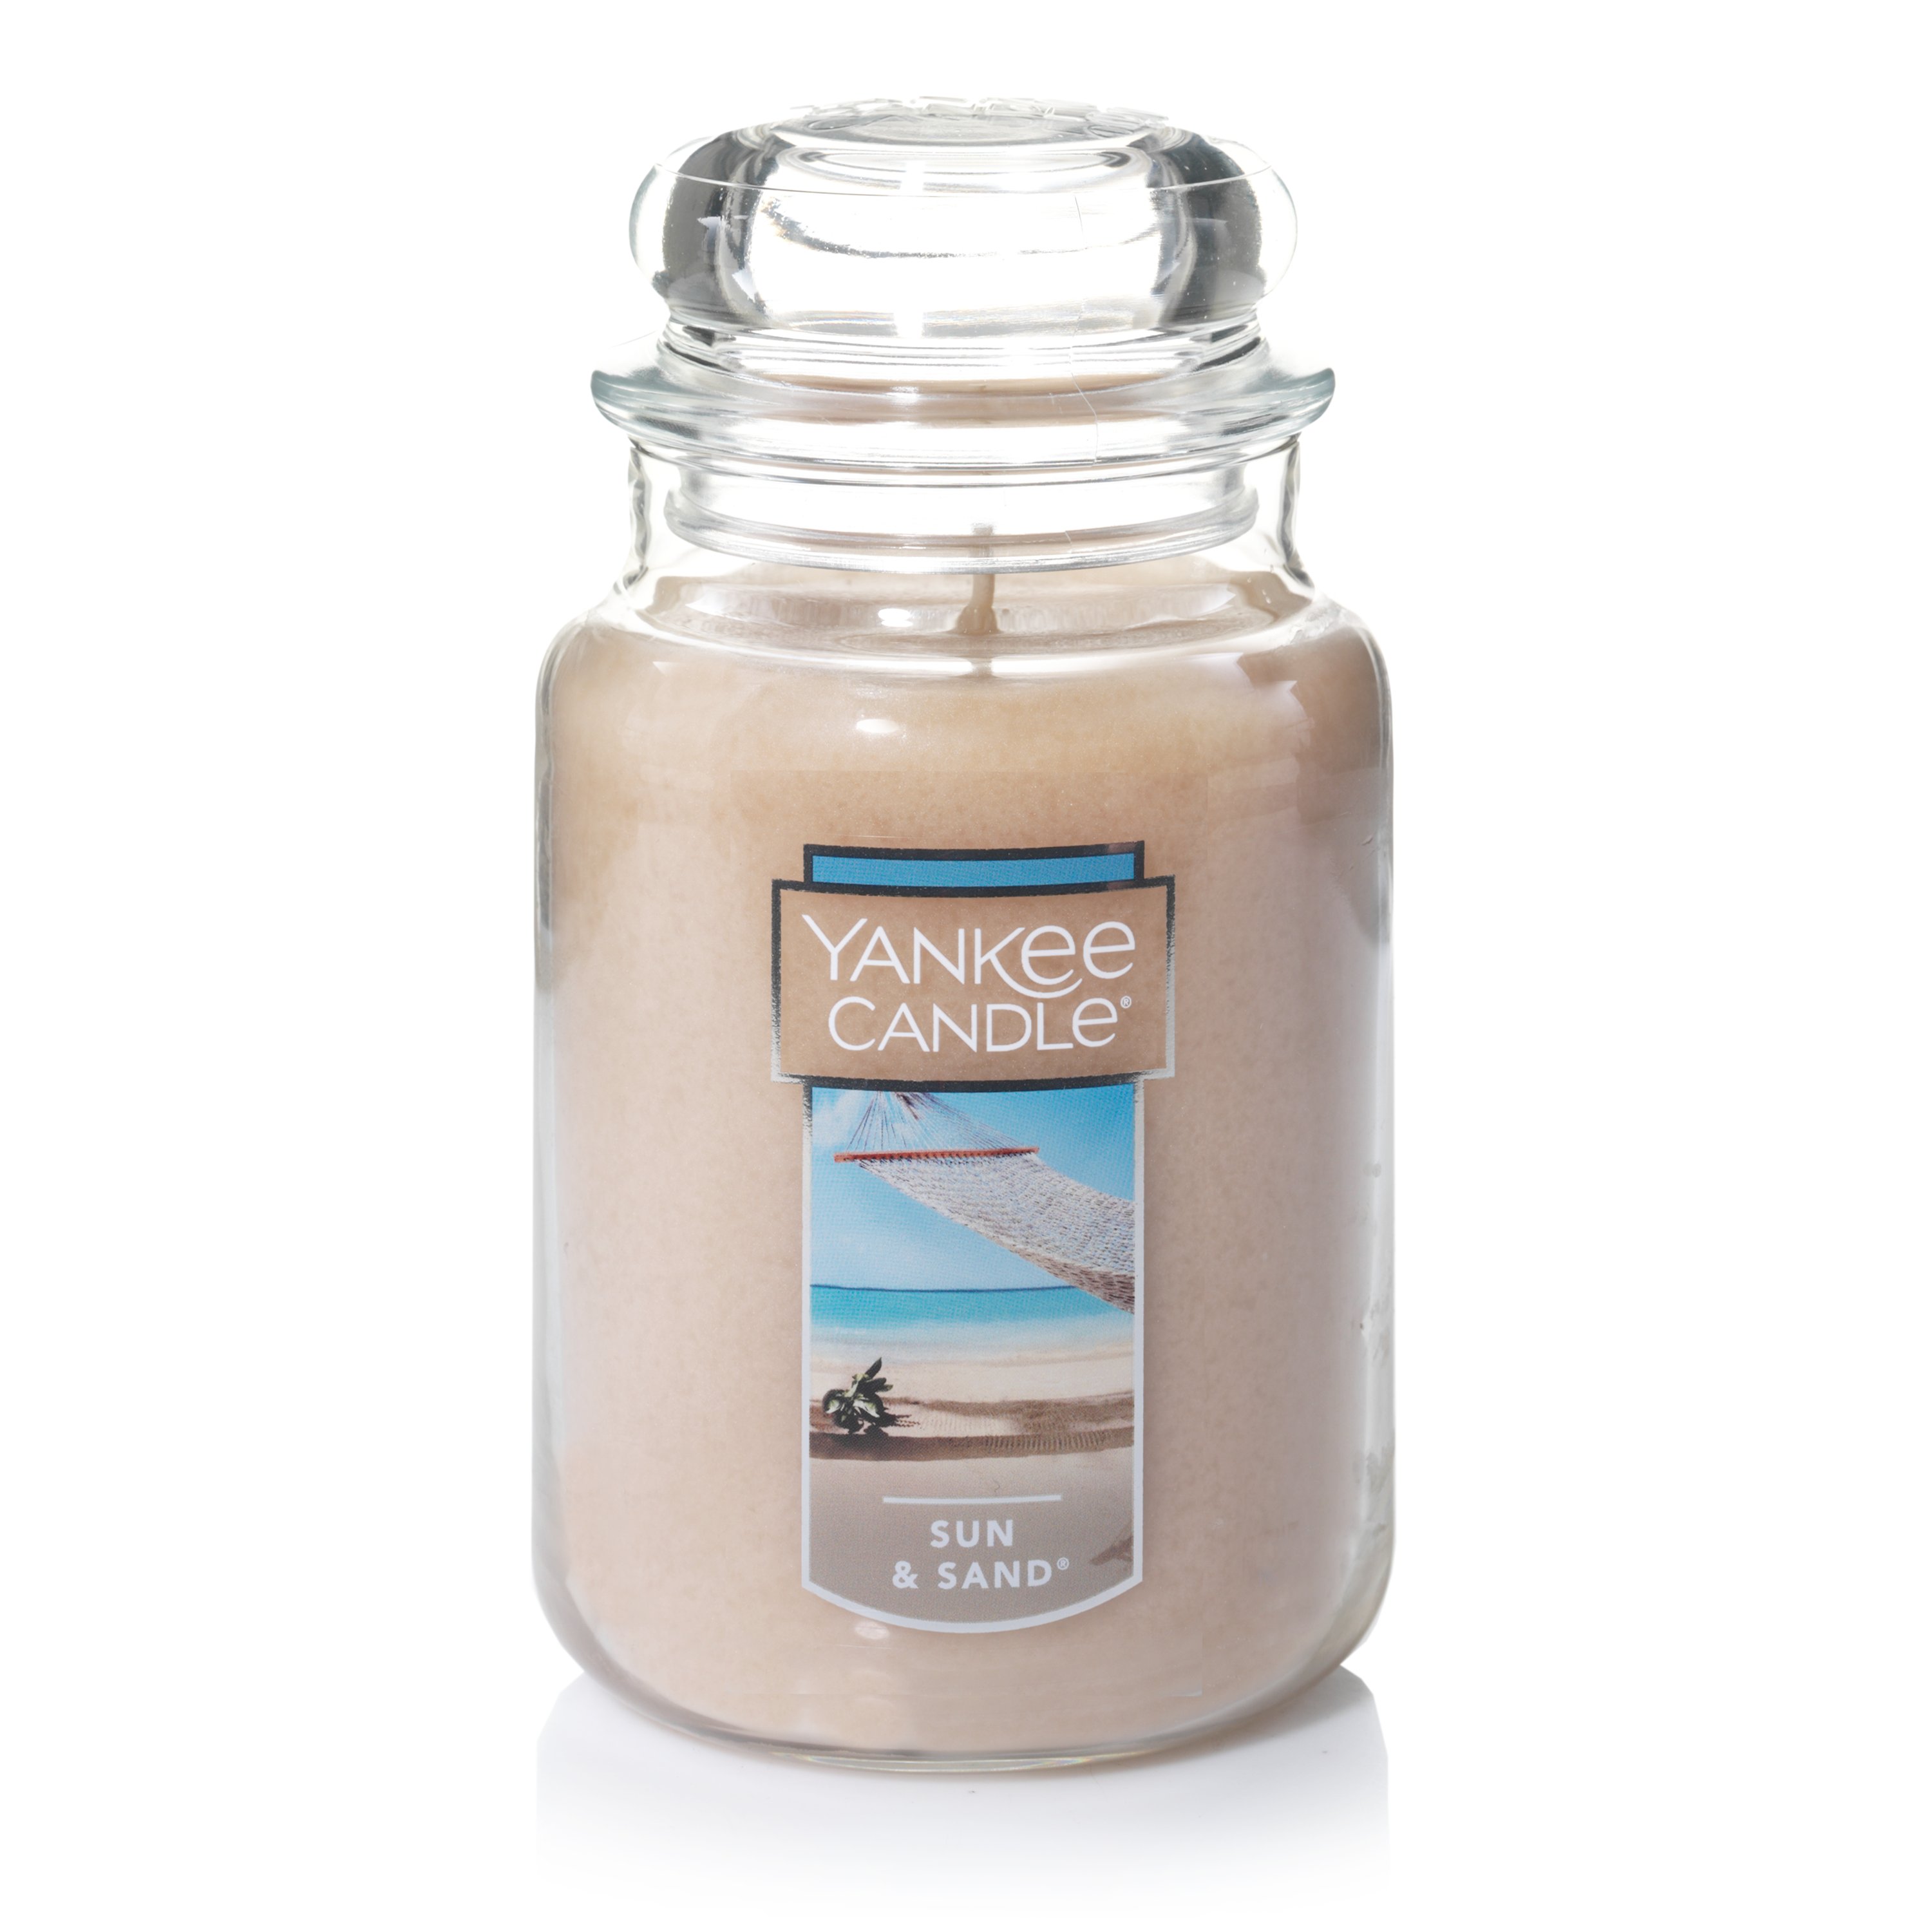 Sun & Sand® 22 oz. Original Large Jar Candles - Large Jar Candles